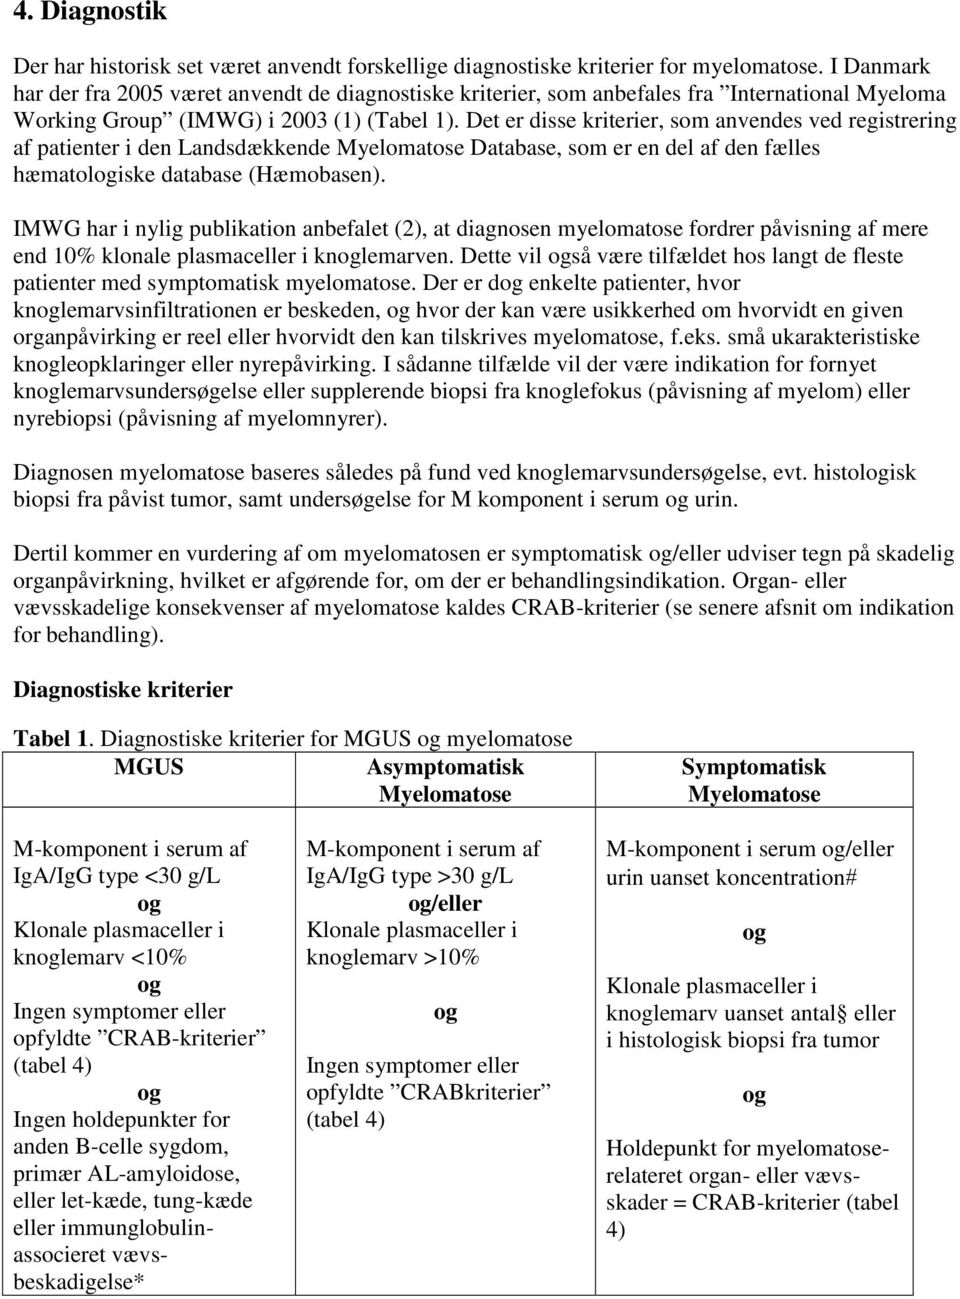 Det er disse kriterier, som anvendes ved registrering af patienter i den Landsdækkende Myelomatose Database, som er en del af den fælles hæmatologiske database (Hæmobasen).